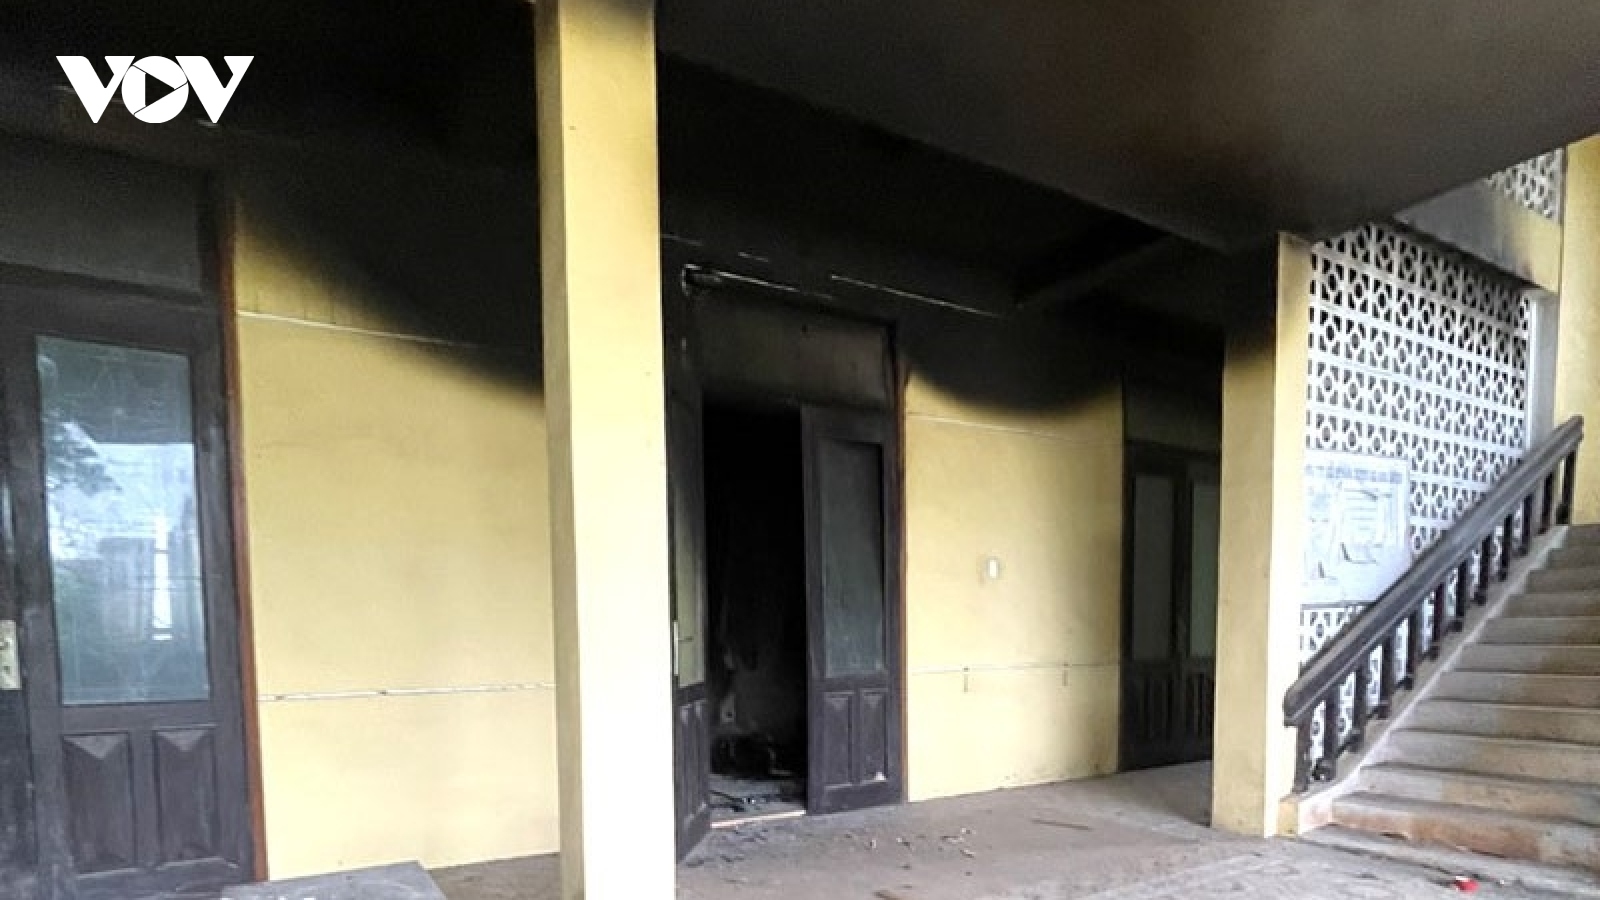 Phát hiện thi thể bị cháy bên trong trụ sở công ty bỏ hoang